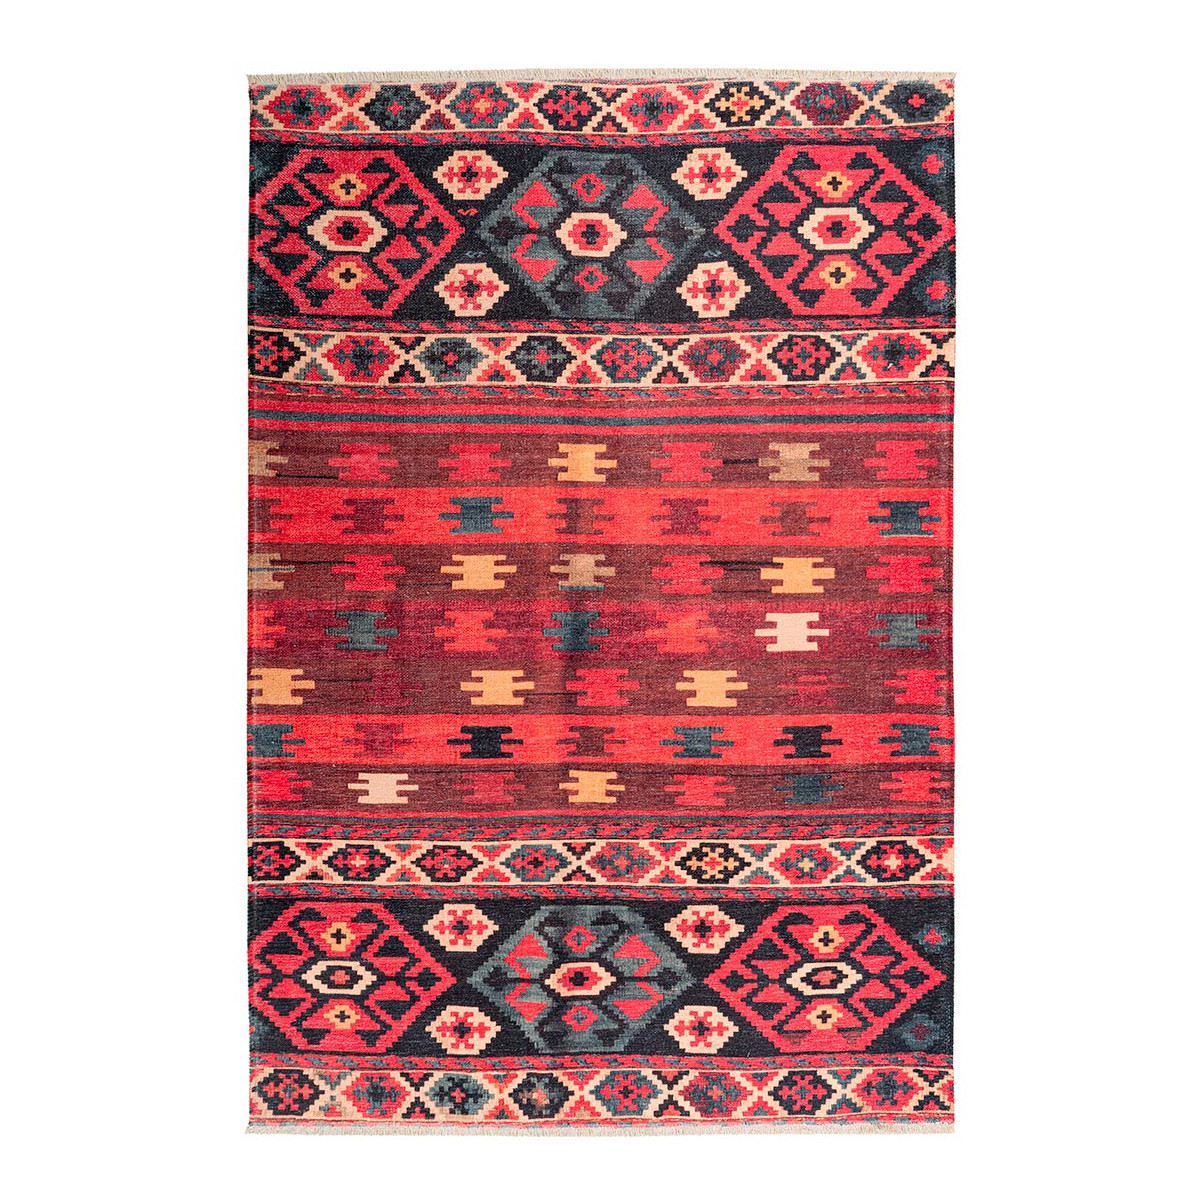 Tapis ethnique patchwork en polyester multicolore 200x290